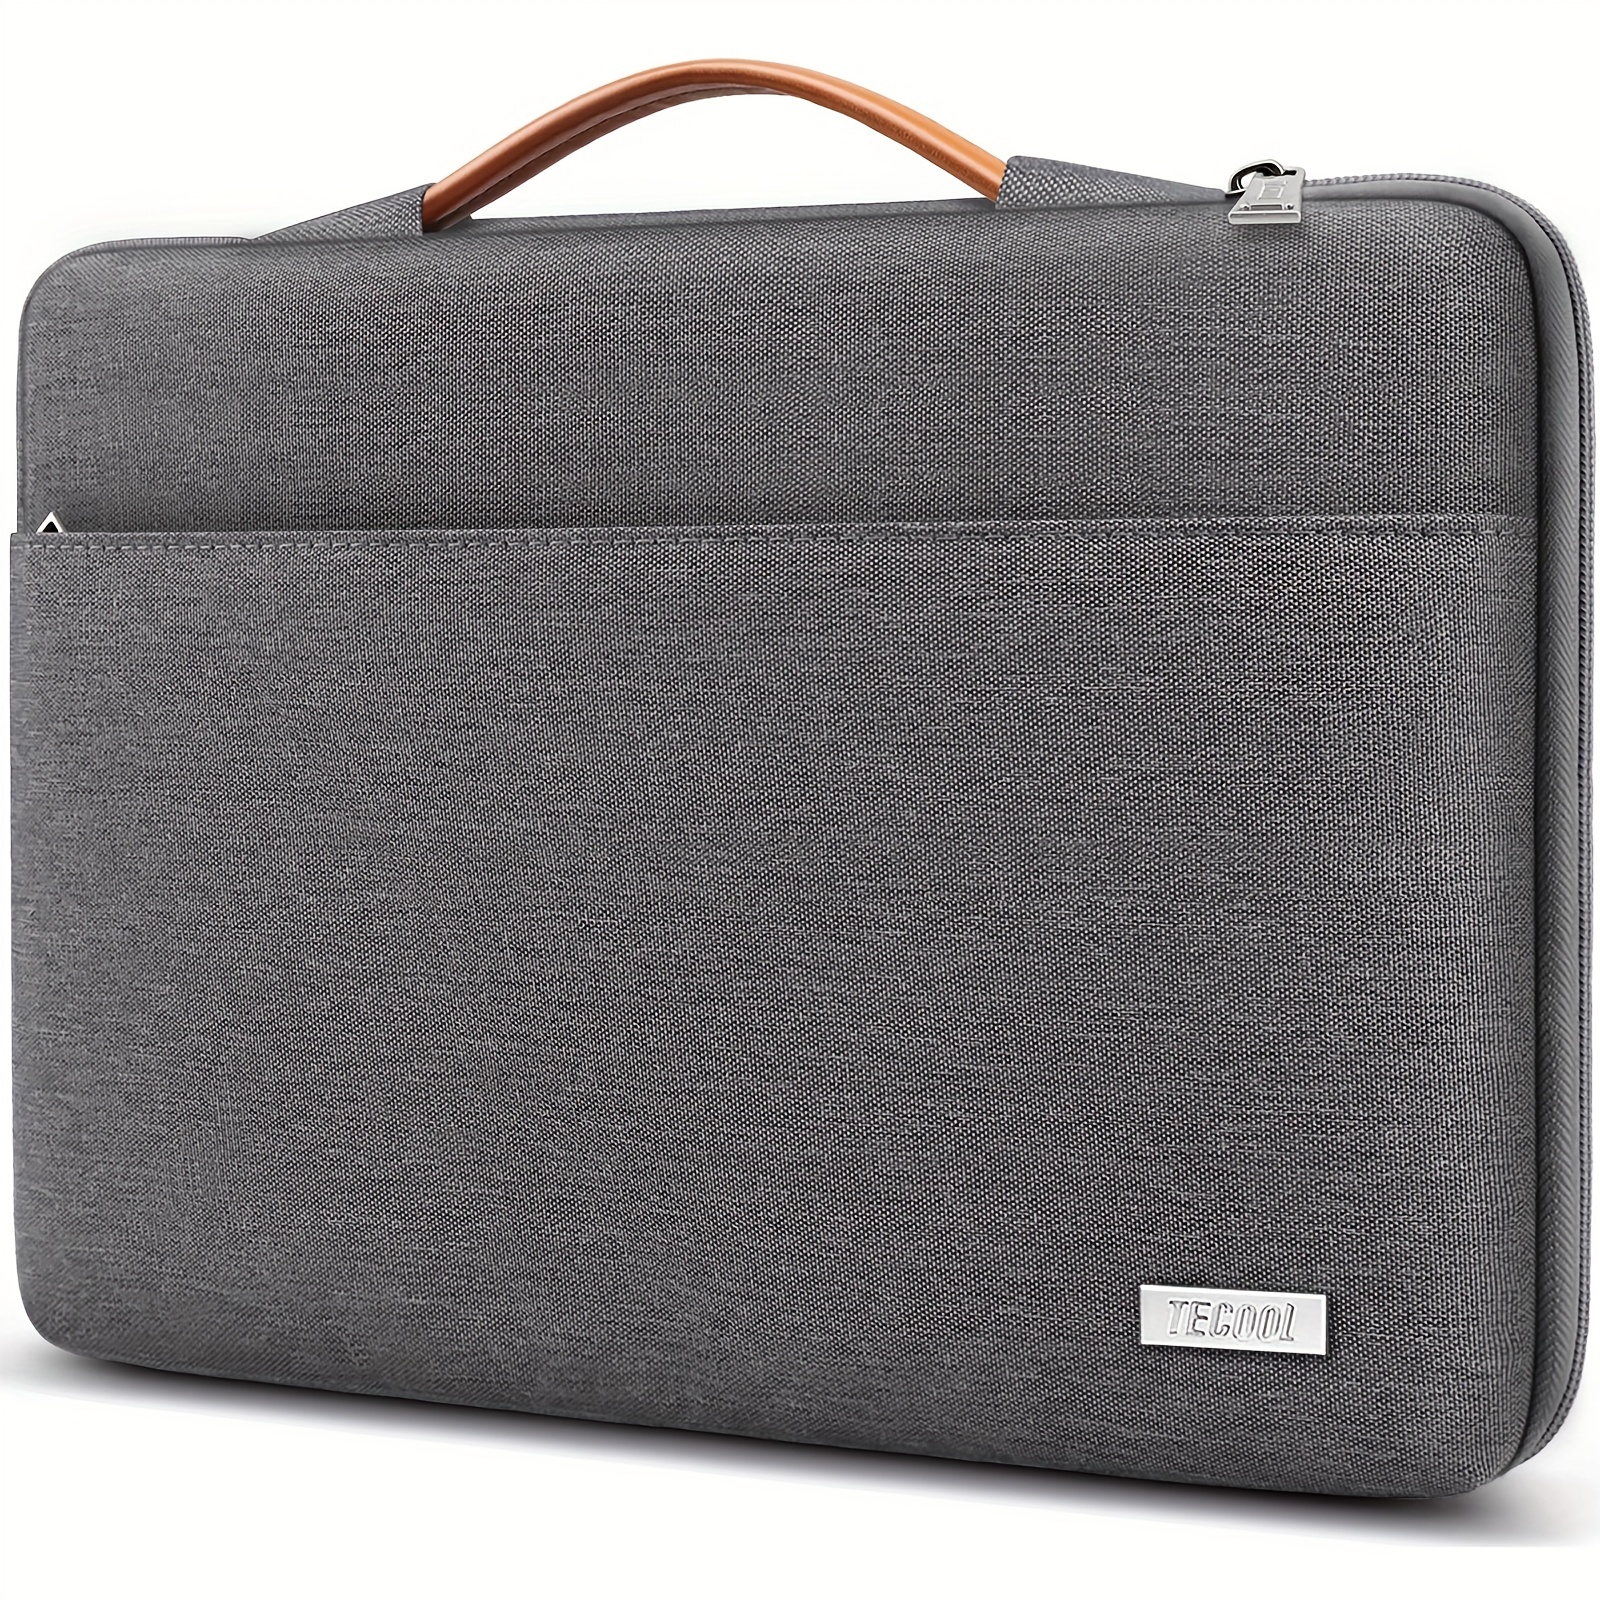 Laptop Bag for Acer